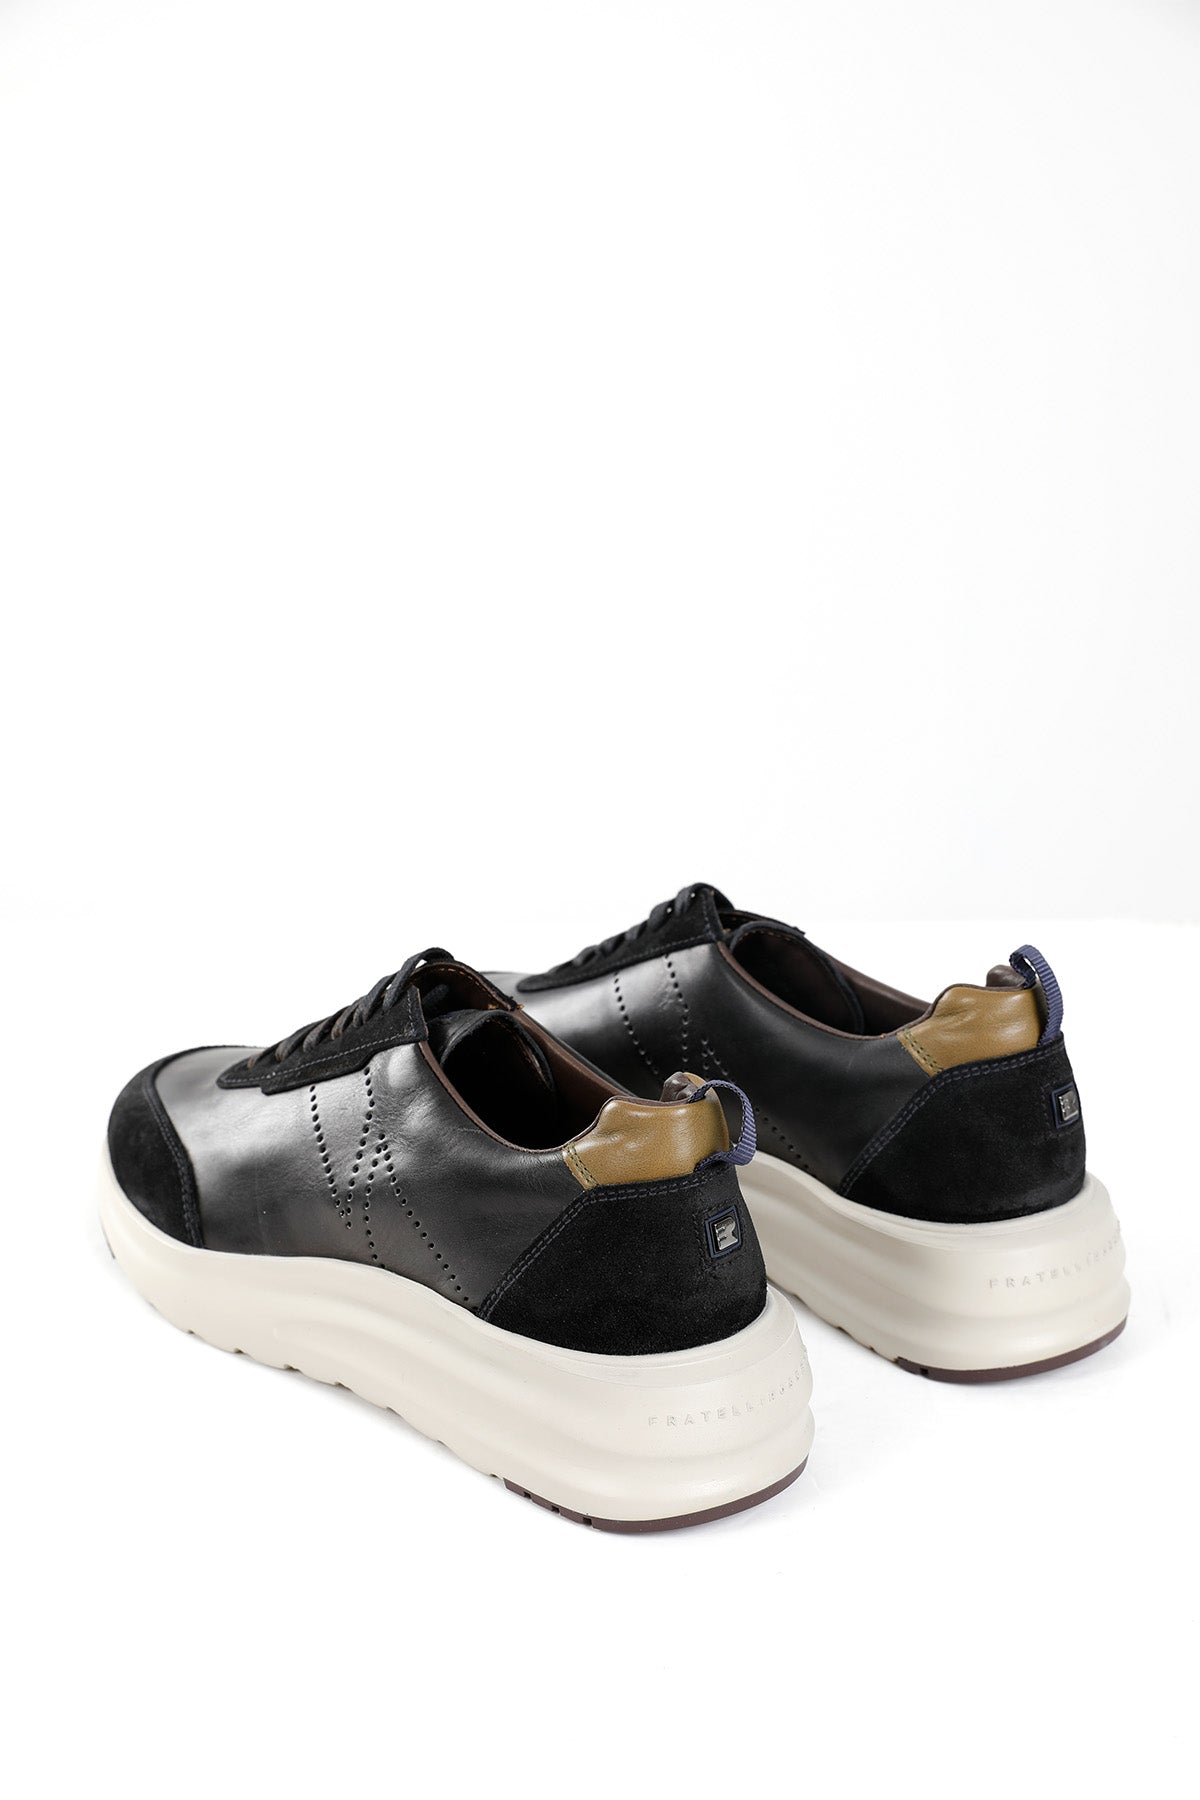 Fratelli Rossetti Deri Sneaker Ayakkabı-Libas Trendy Fashion Store